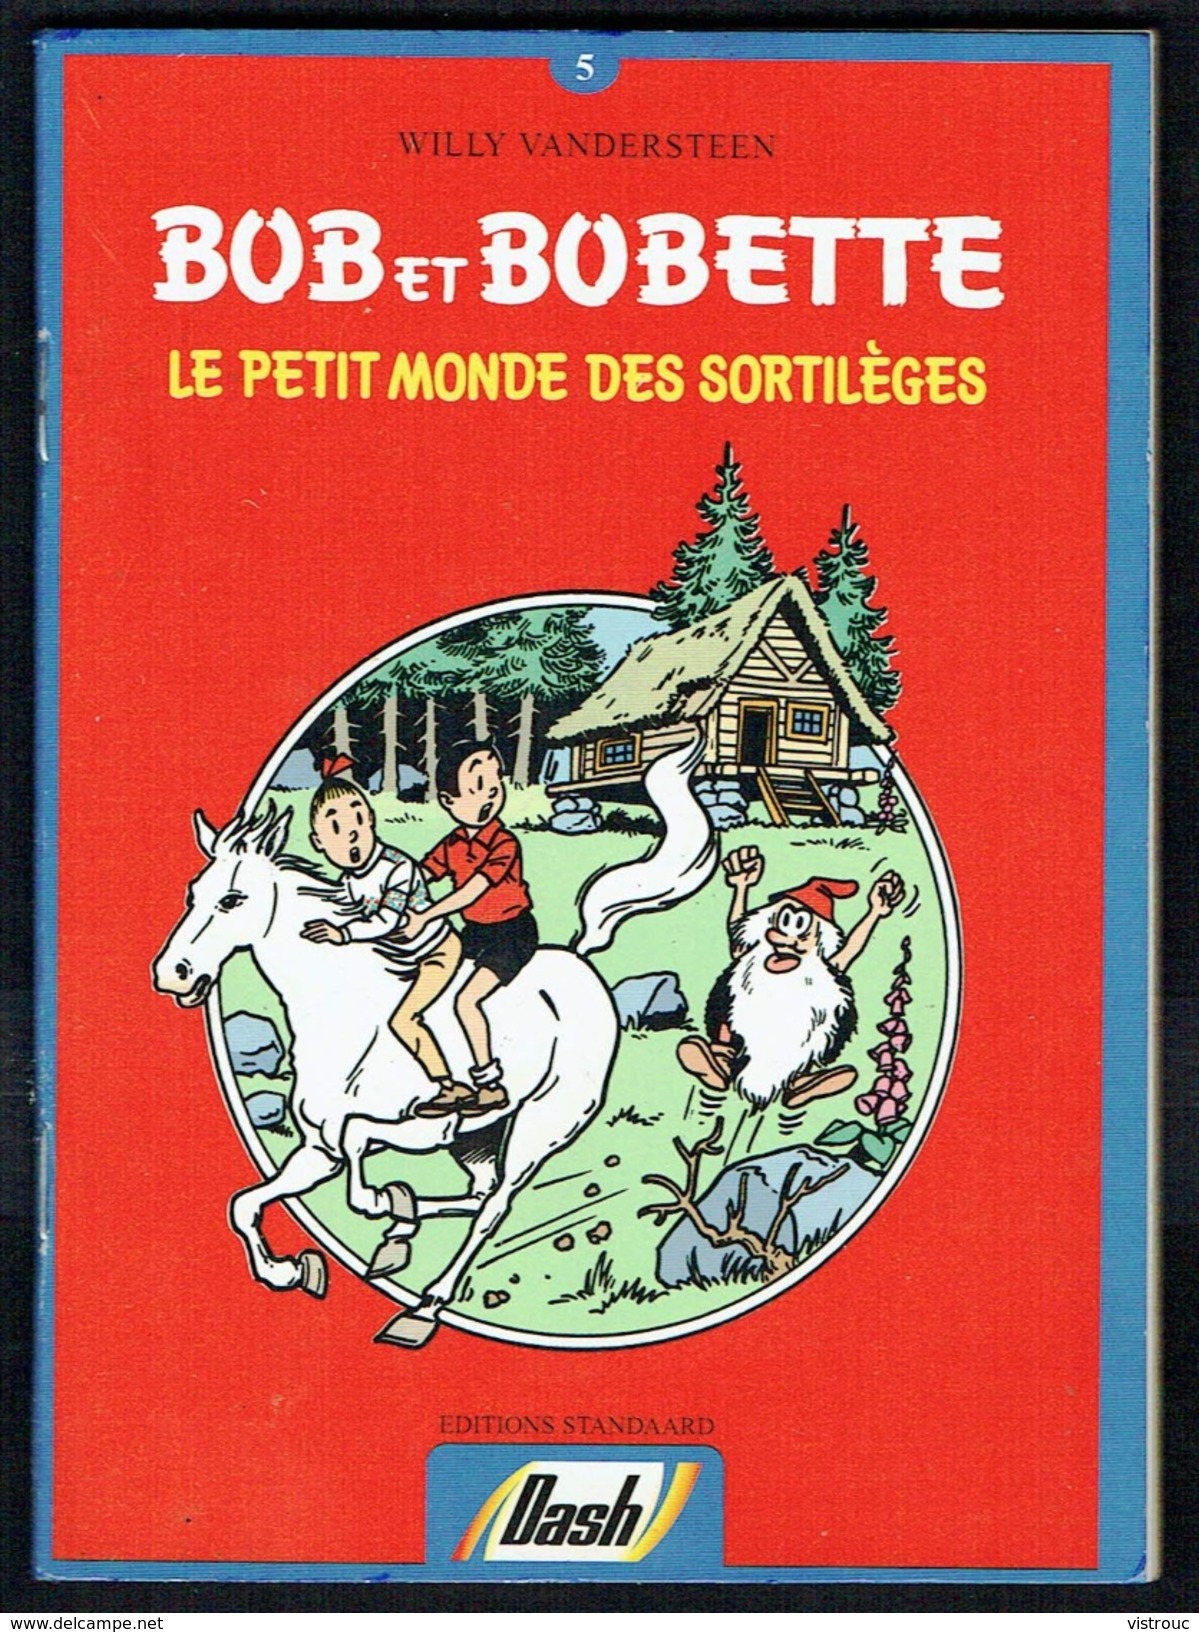 Mini-Bd Publicitaire "DASH" - Willy Vandersteen - Bob Et Bobette  N° 5 - " Le Petit Monde Des Sortilèges " FR/NL. - Bob Et Bobette